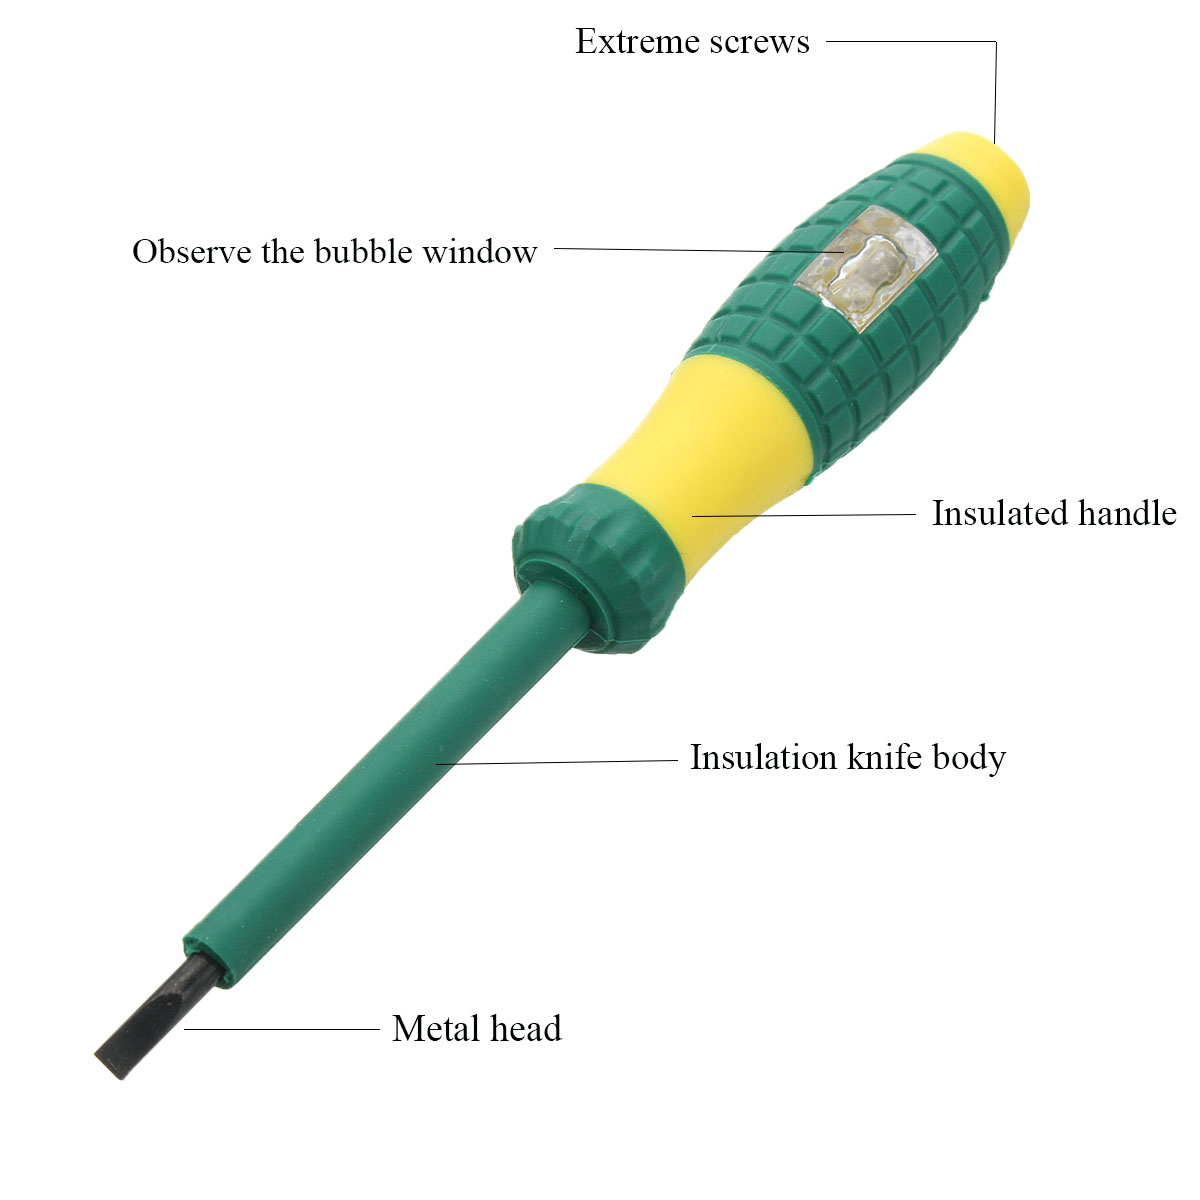 220V-Electrical-Tester-Pen-Screwdriver-Voltage-Test-Power-Detector-Probe-1214845